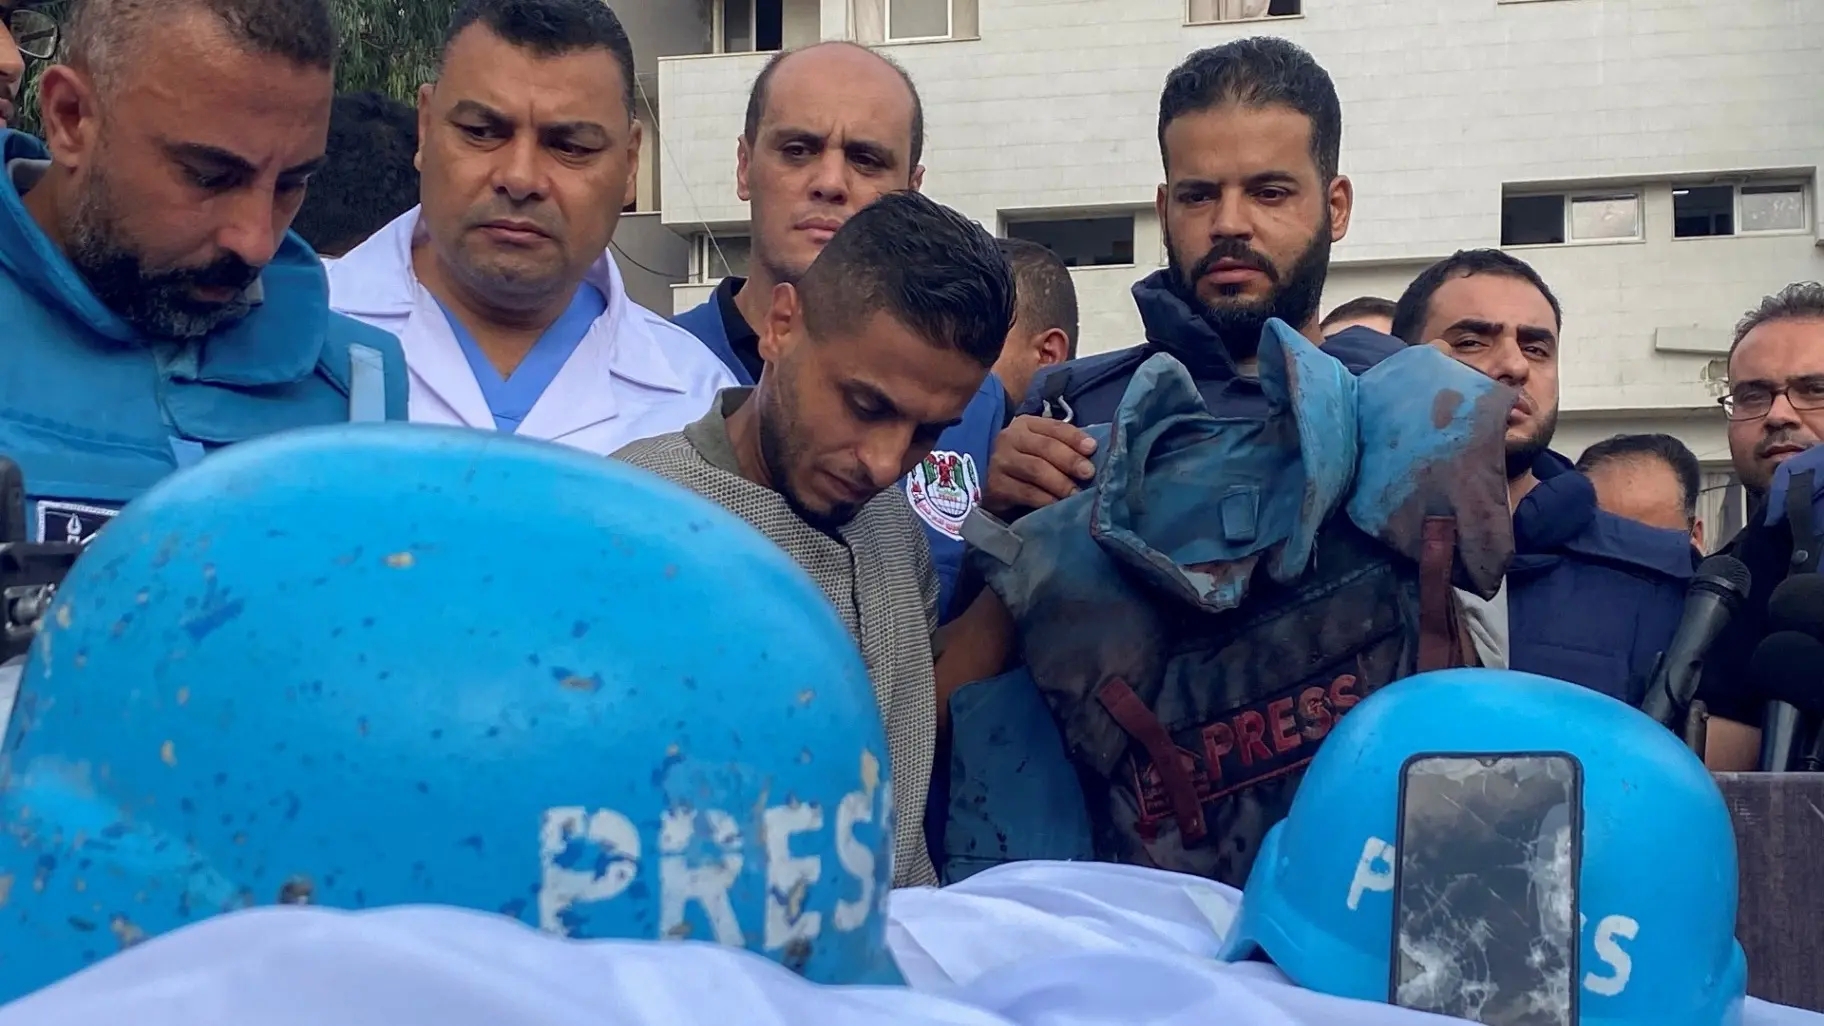 ارتفاع عدد الشهداء الصحفيين جراء العداون الإسرائيلي على غزة إلى 122